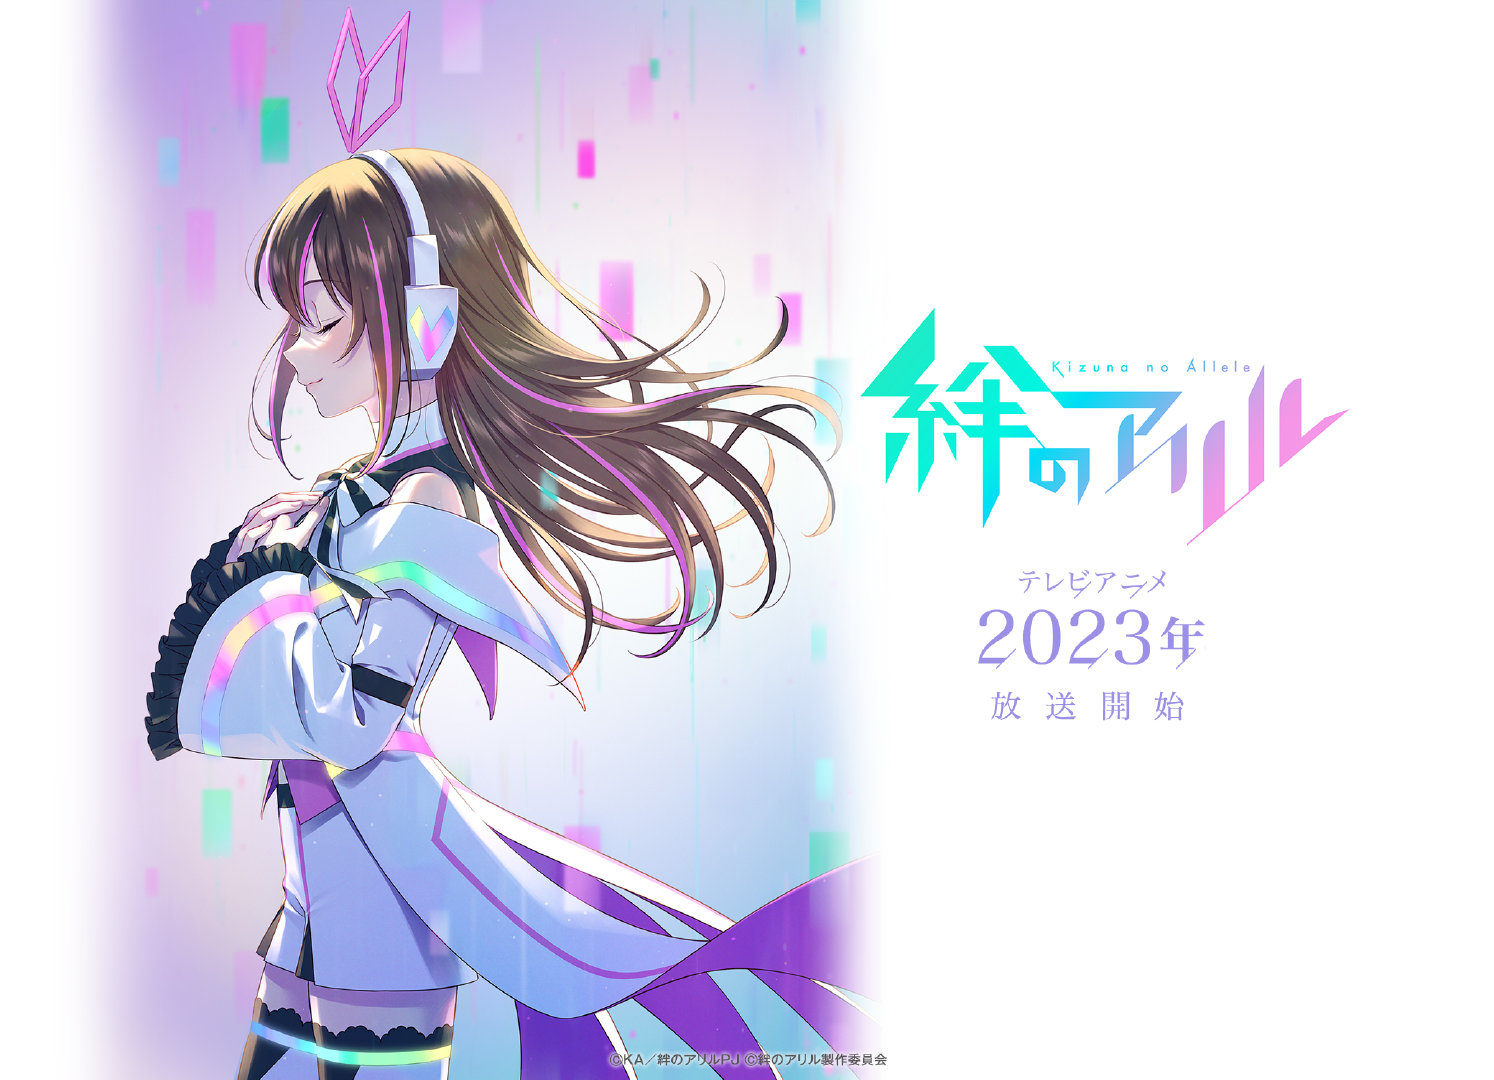 动画企划「絆のアリル」最新预告PV第一弹公开